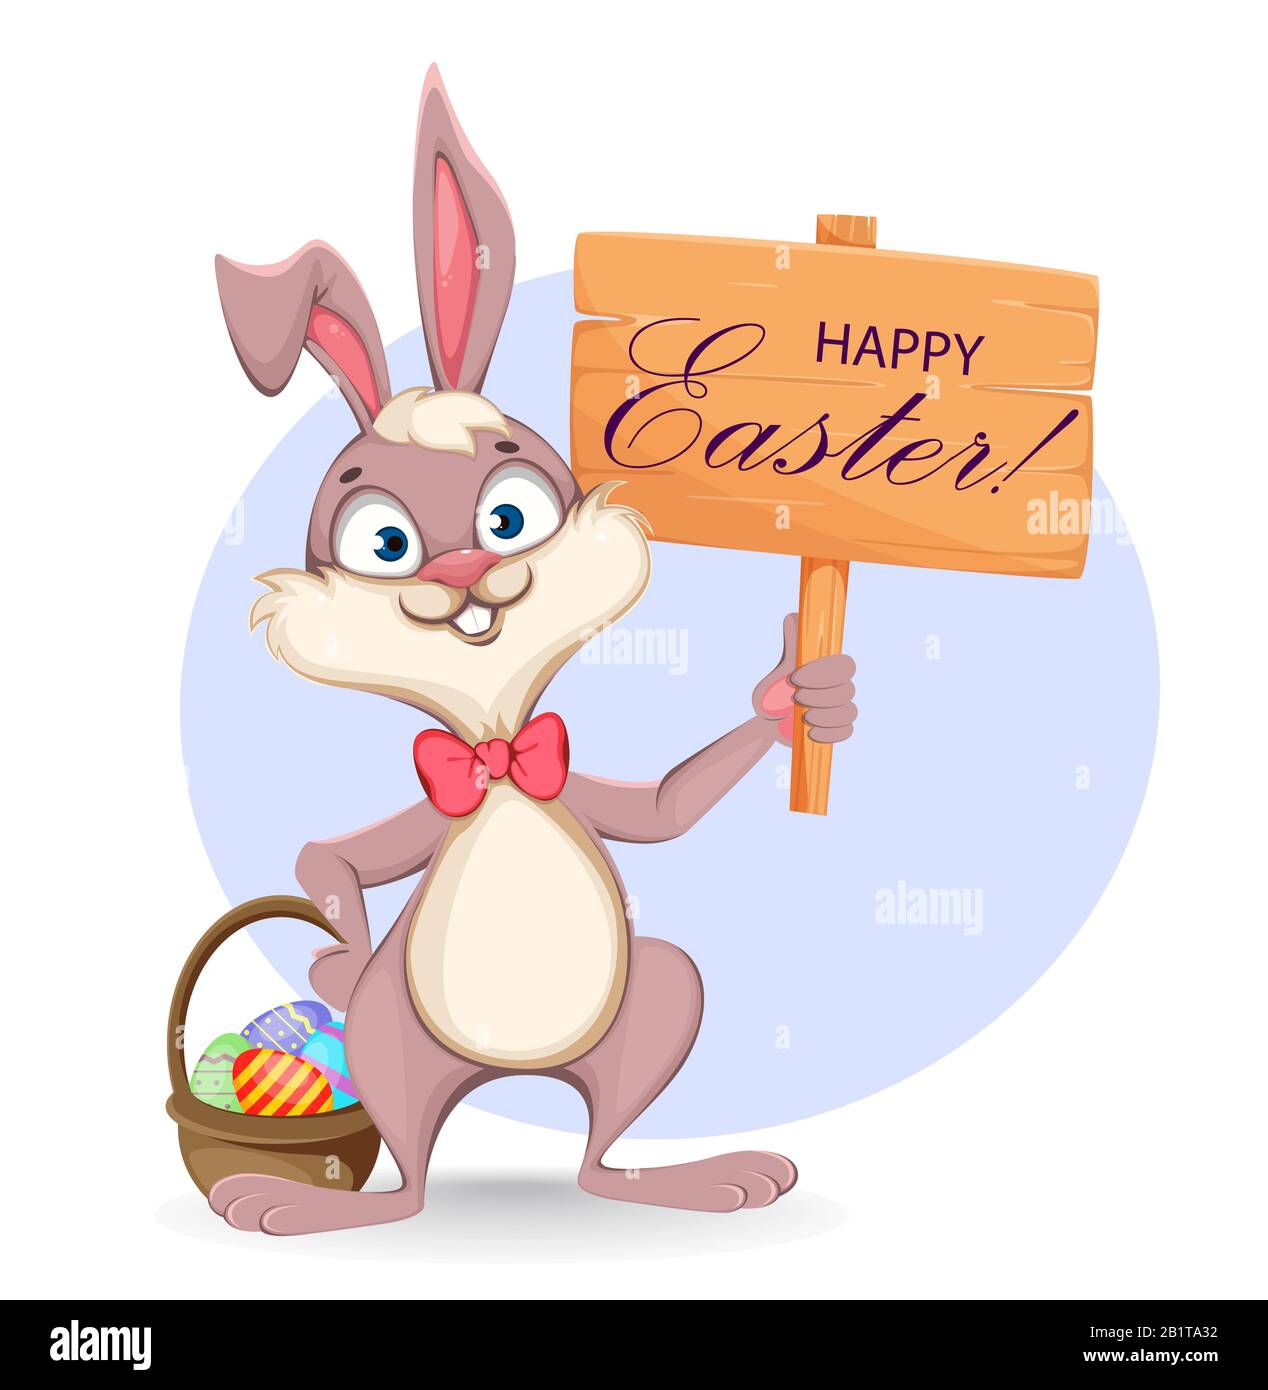 Frohe Ostern Grußkarte. Cartoon-Kaninchen mit Holzschild und Korb voller farbiger Eier. Bestandsvektor Stock Vektor